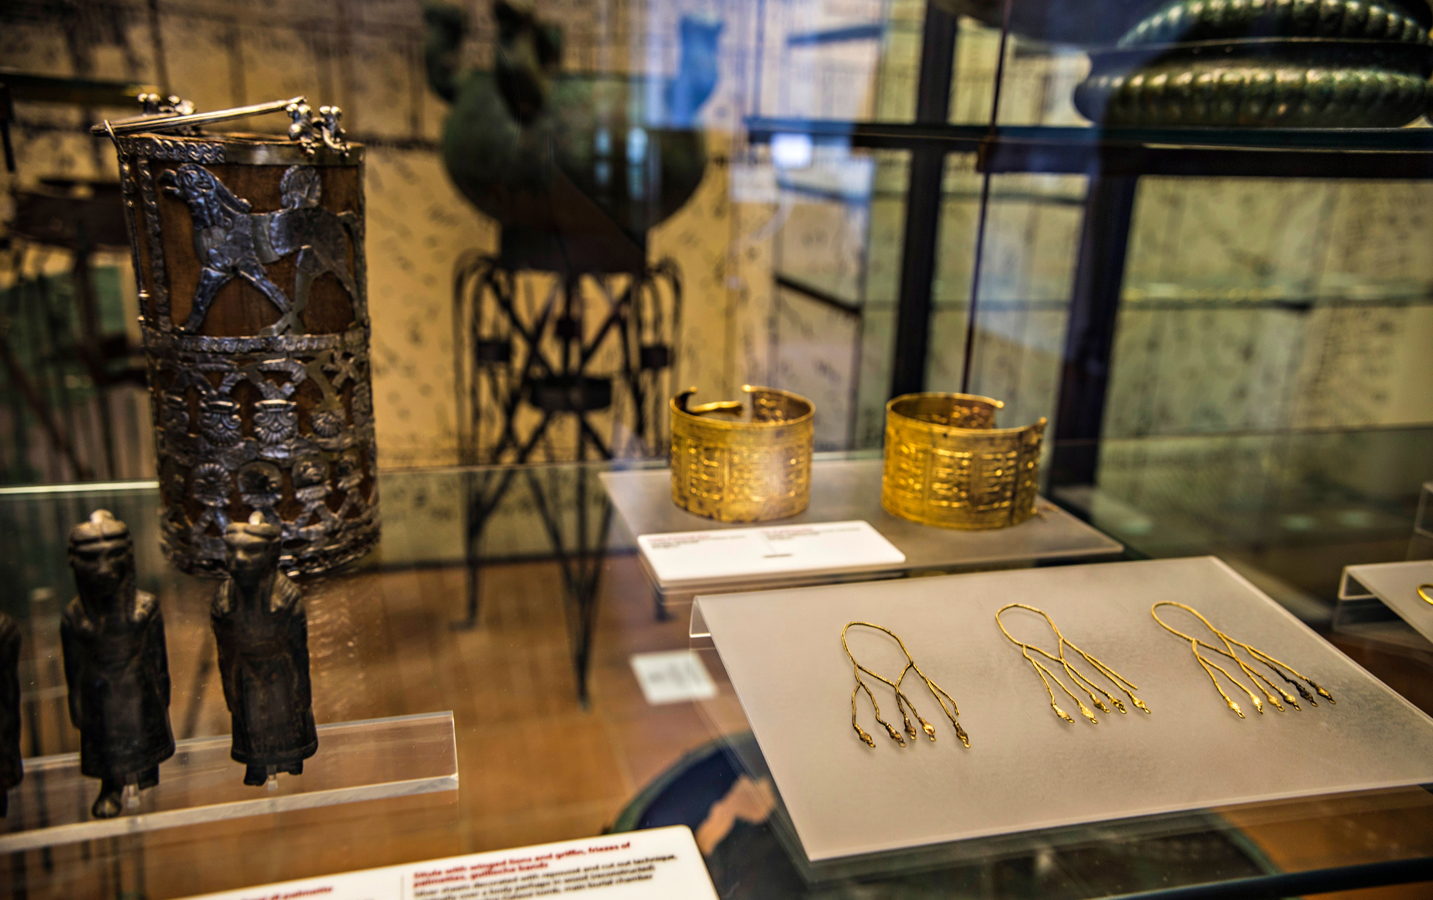 Etruské muzeum (Museo Gregoriano Etrusko ve Vatikánu) - expozice etruských šperků